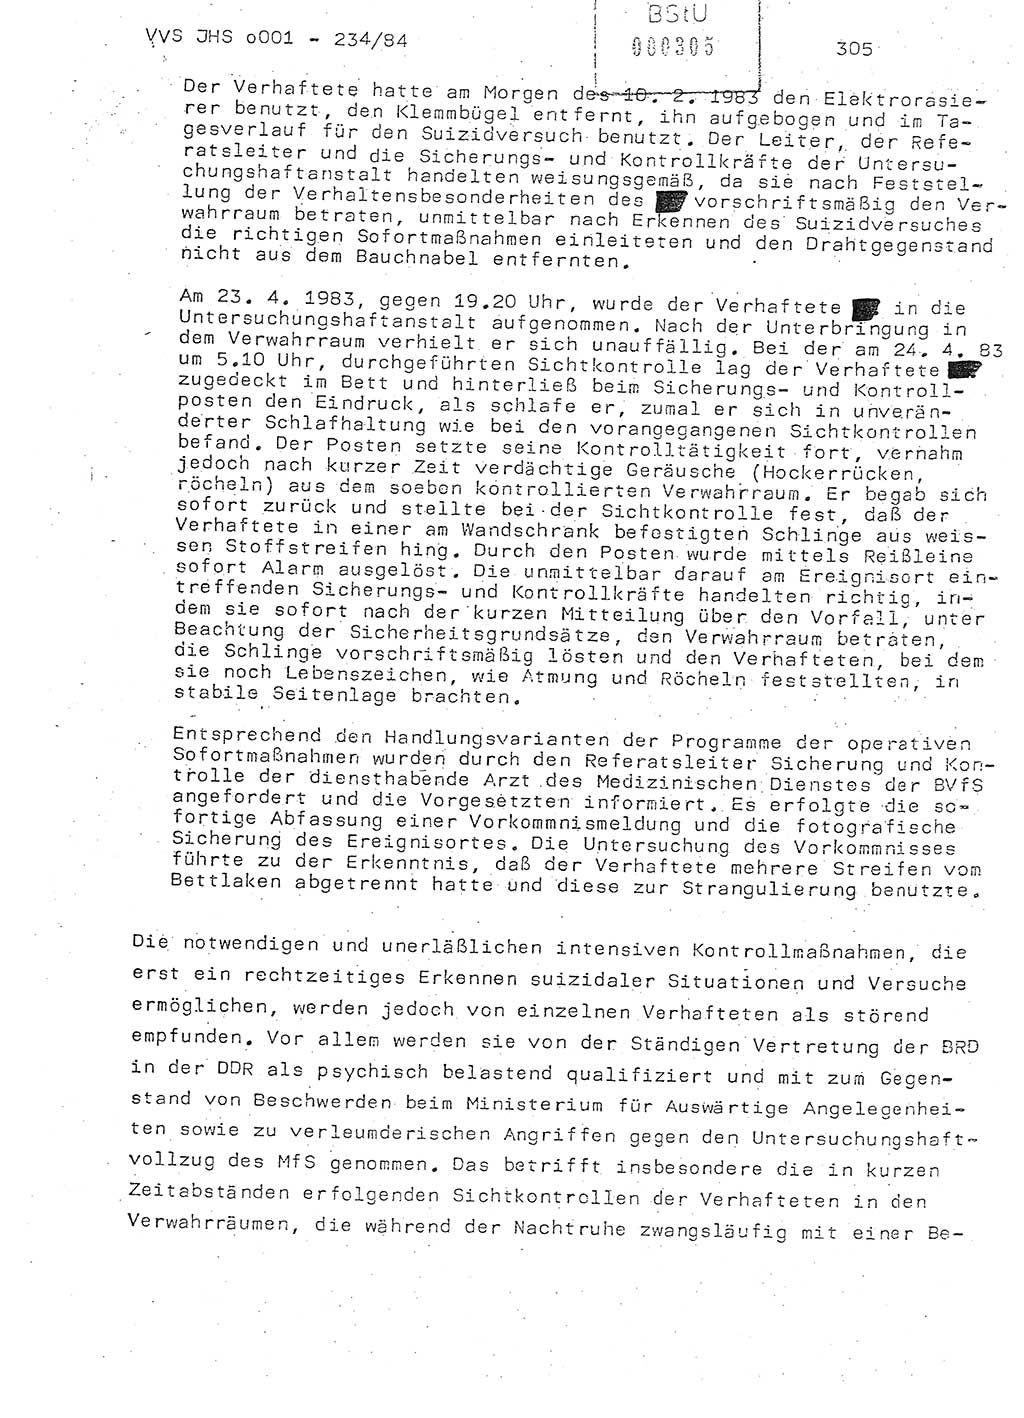 Dissertation Oberst Siegfried Rataizick (Abt. ⅩⅣ), Oberstleutnant Volkmar Heinz (Abt. ⅩⅣ), Oberstleutnant Werner Stein (HA Ⅸ), Hauptmann Heinz Conrad (JHS), Ministerium für Staatssicherheit (MfS) [Deutsche Demokratische Republik (DDR)], Juristische Hochschule (JHS), Vertrauliche Verschlußsache (VVS) o001-234/84, Potsdam 1984, Seite 305 (Diss. MfS DDR JHS VVS o001-234/84 1984, S. 305)